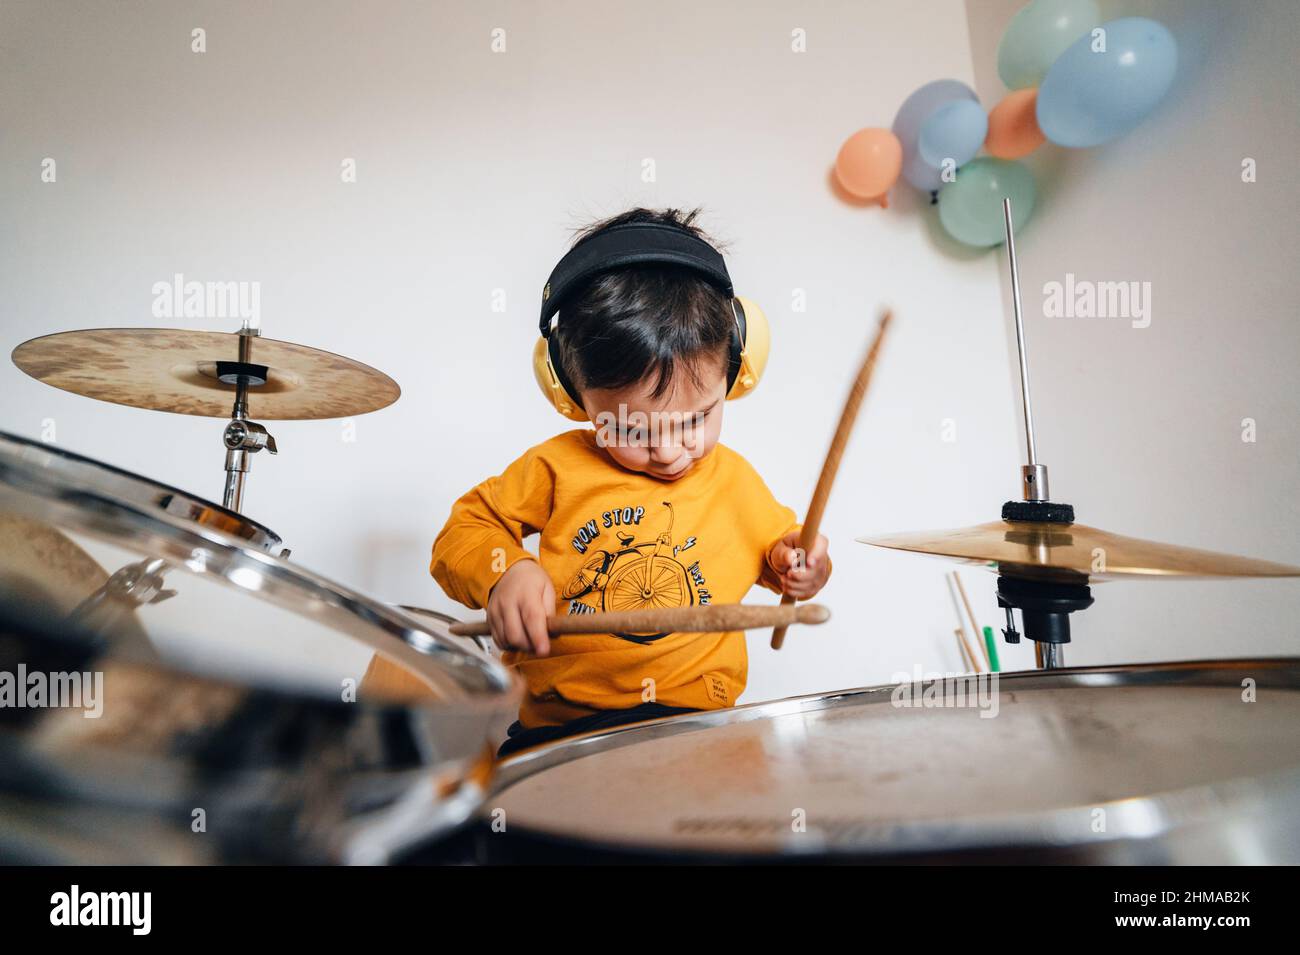 Motivierter Junge, der mit geräuschisolierenden Kopfhörern Schlagzeug spielt Stockfoto